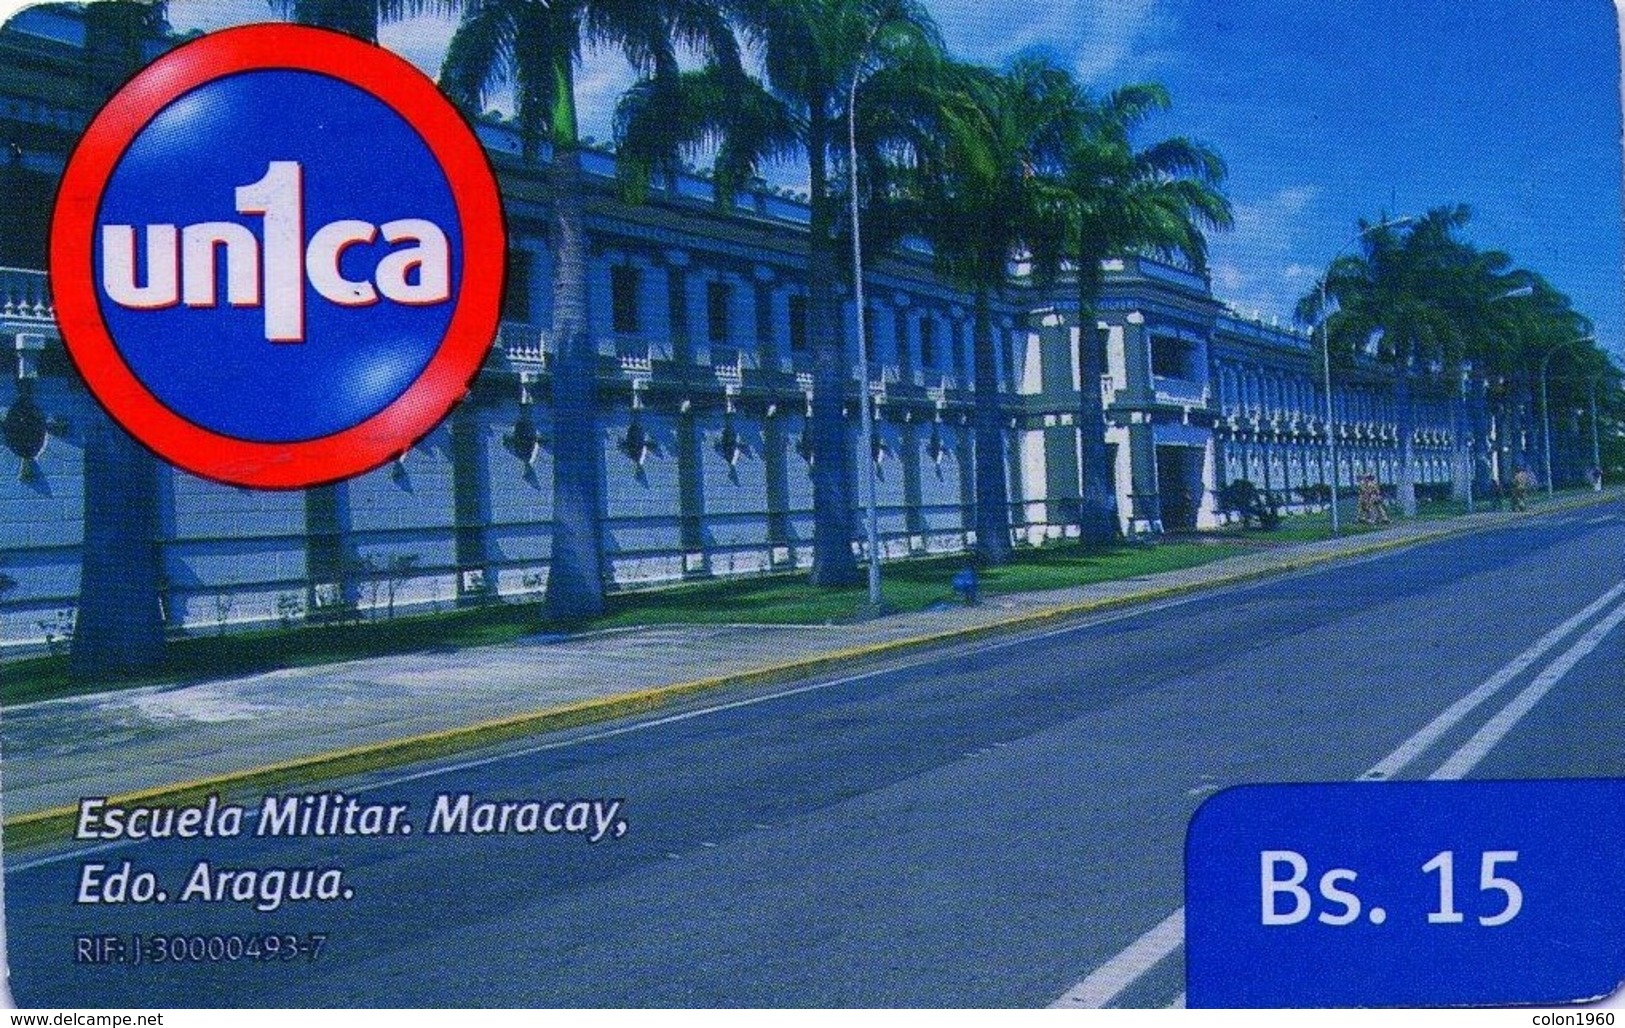 VENEZUELA, GSM-RECARGA. Escuela Militar, Maracay. Edo. Aragua. UI091121. VE-UNICA-U-091121. (280). - Army